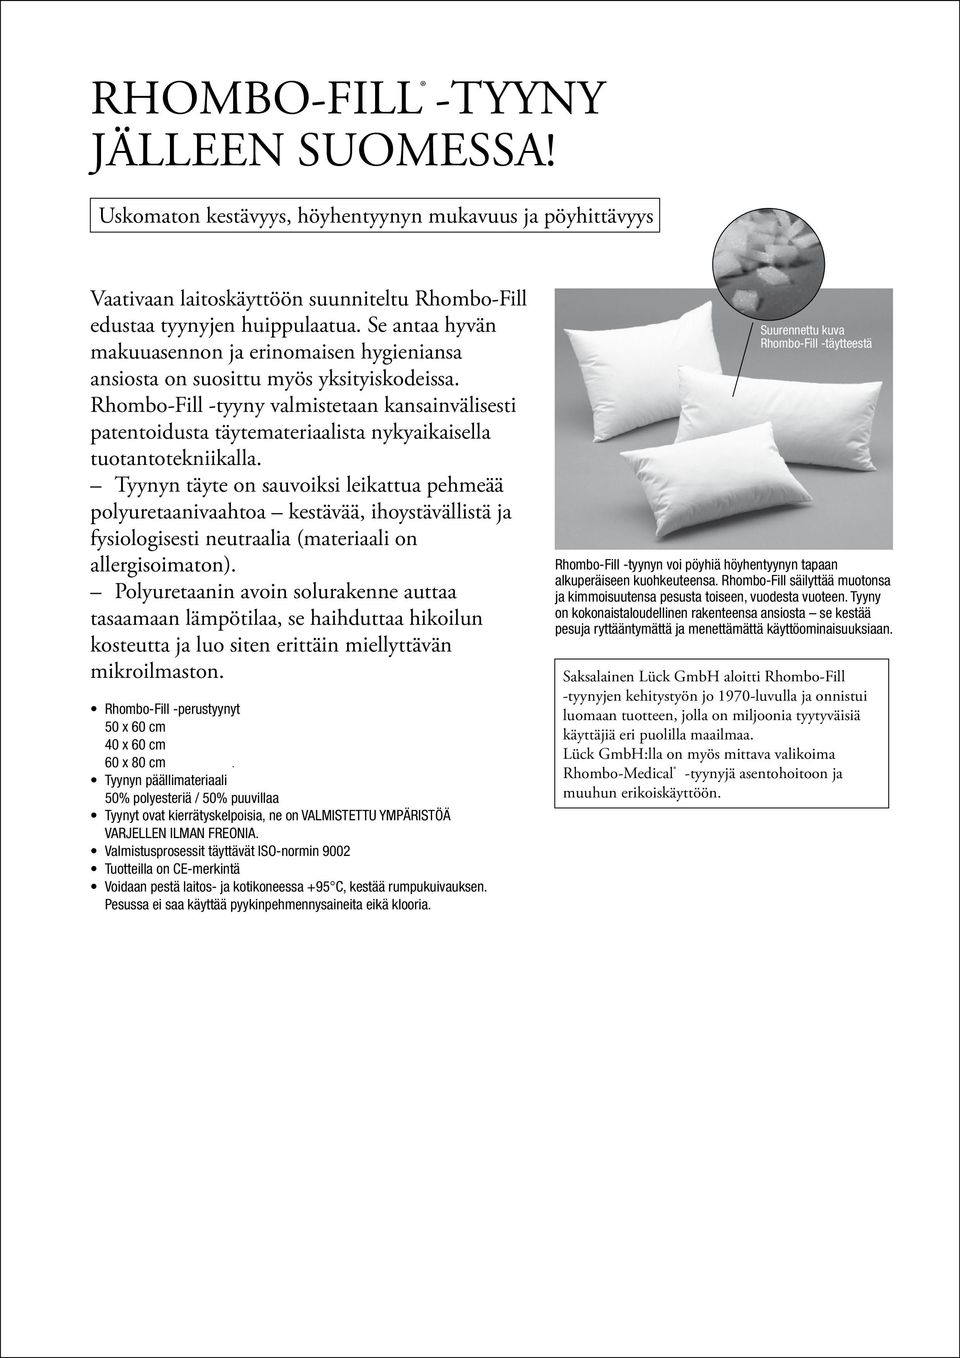 Rhombo-Fill -tyyny valmistetaan kansainvälisesti patentoidusta täytemateriaalista nykyaikaisella tuotantotekniikalla.